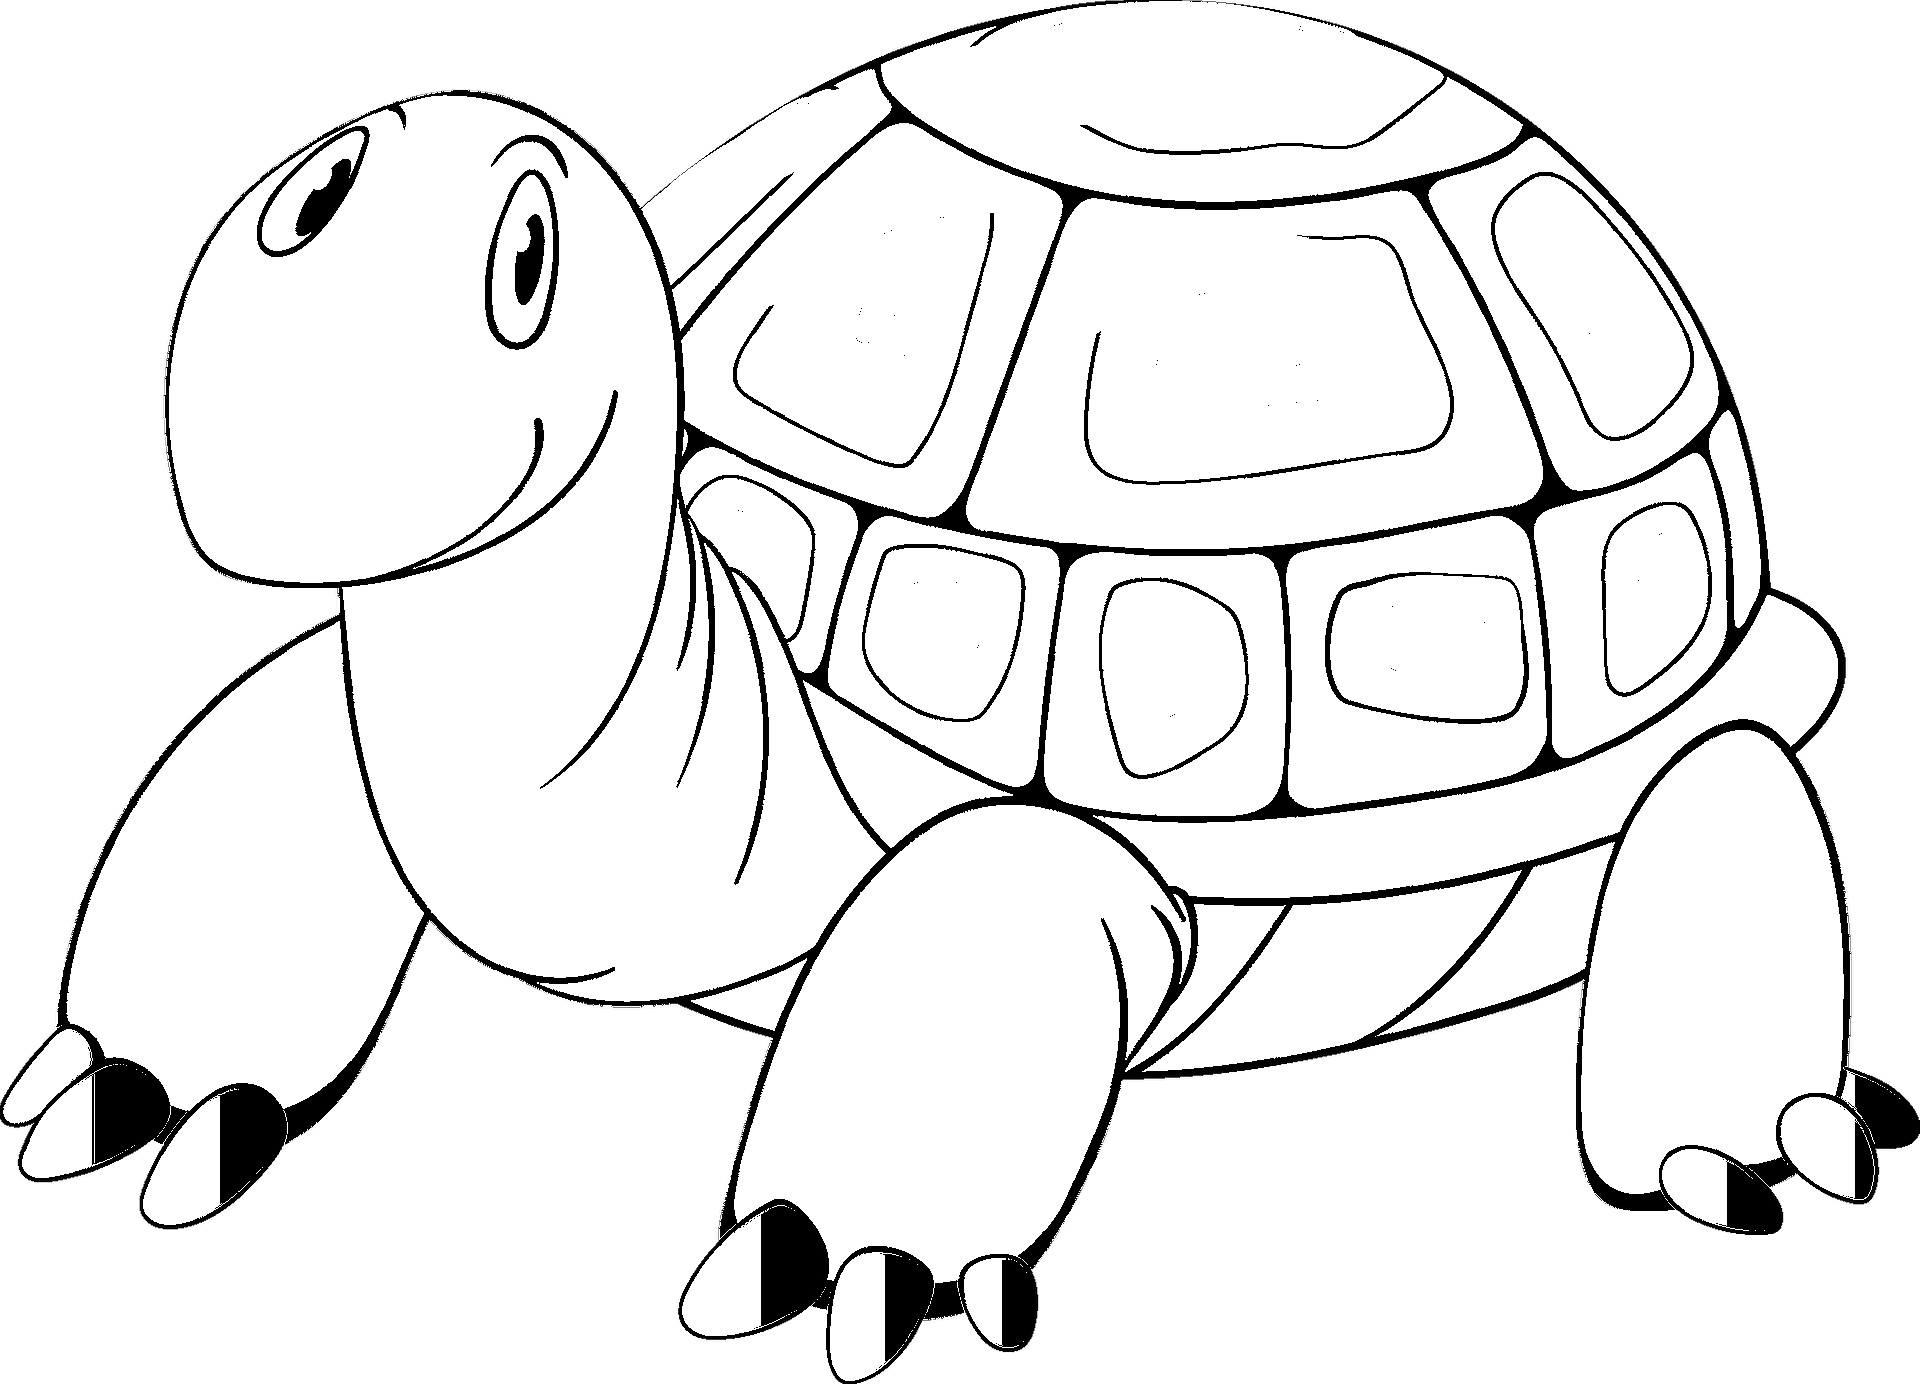 Disegno da colorare di una tartaruga